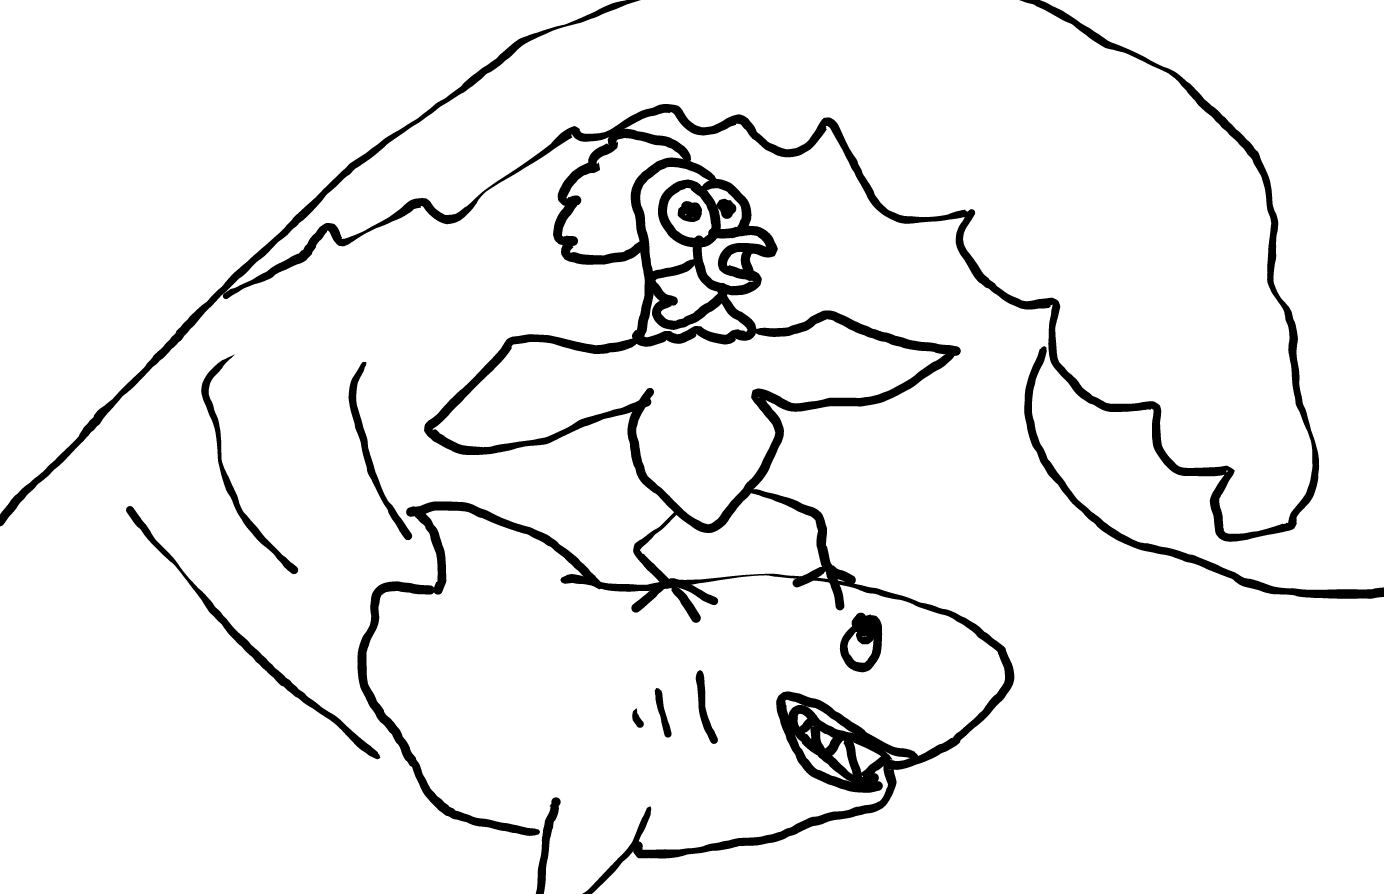 Picture of chicken surfing shark cartoon.